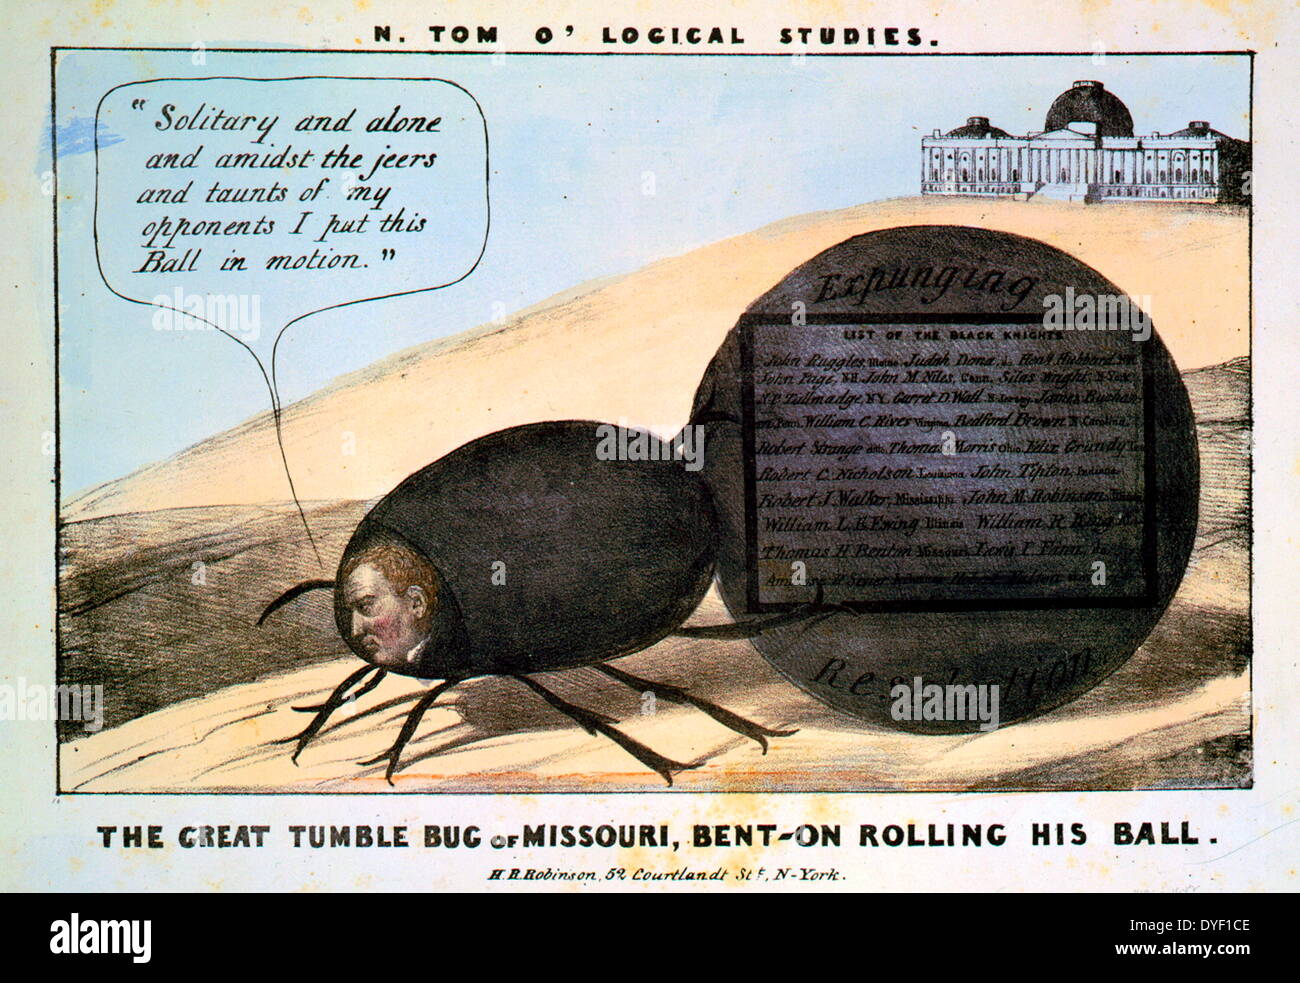 N. Tom O'logische Studien eine politische Karikatur persiflieren ehemalige Missouri Senator Thomas Hart Benton, wie: "Der große tumble Bug von Missouri, gebogen - rollin seine Kugel'. Lithographie mit Aquarell auf Papier webten. Circa 1837. Stockfoto